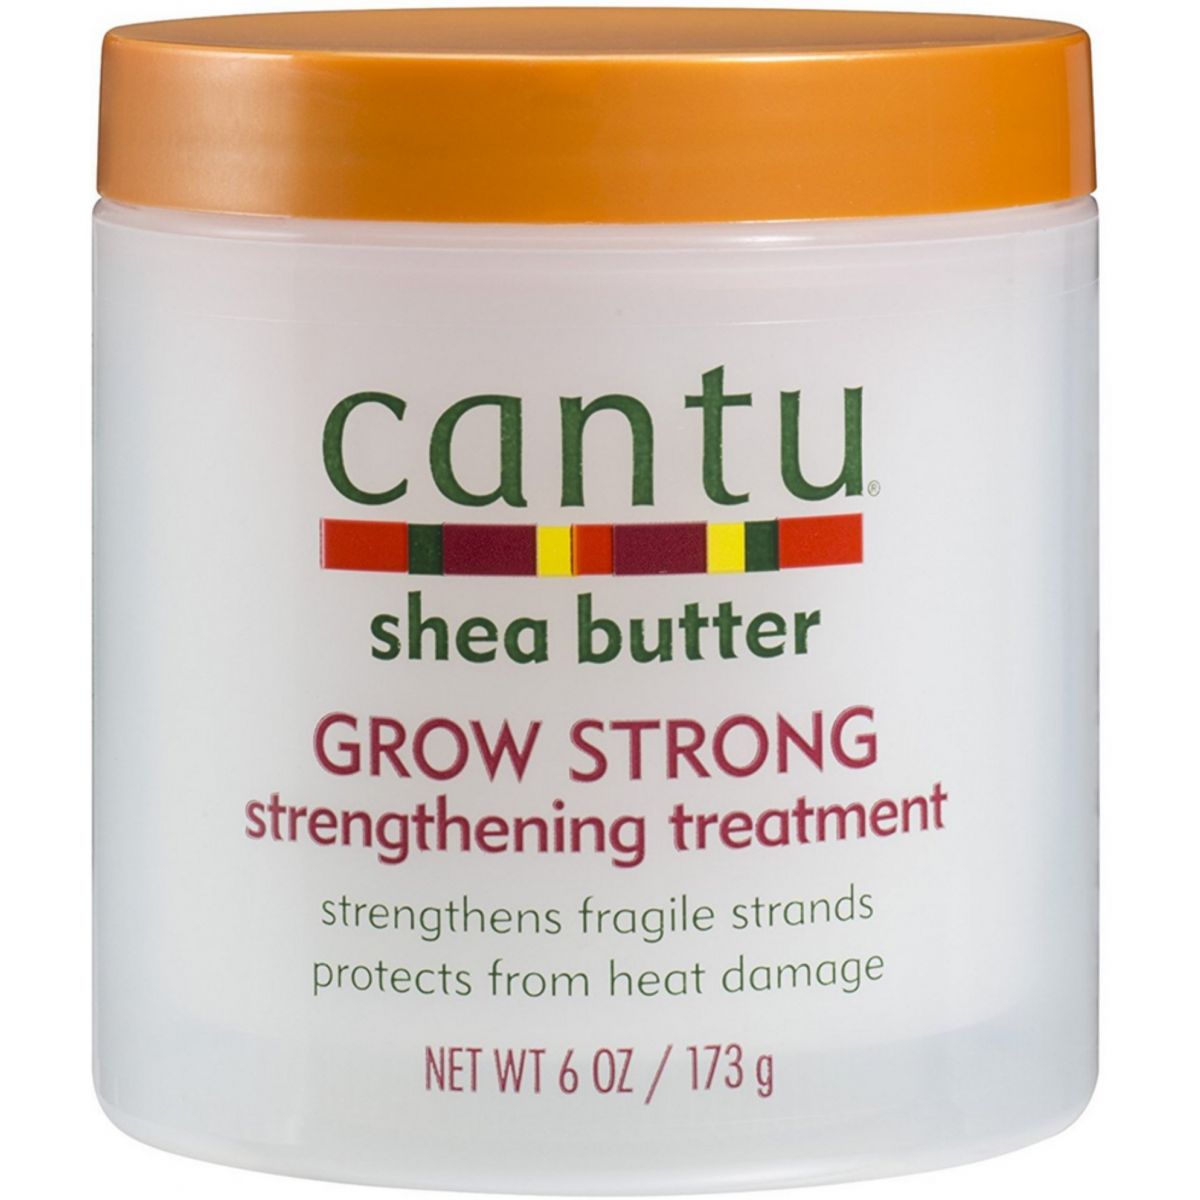 Mantequilla de karité Cantu crece un tratamiento de fortalecimiento fuerte 6 oz